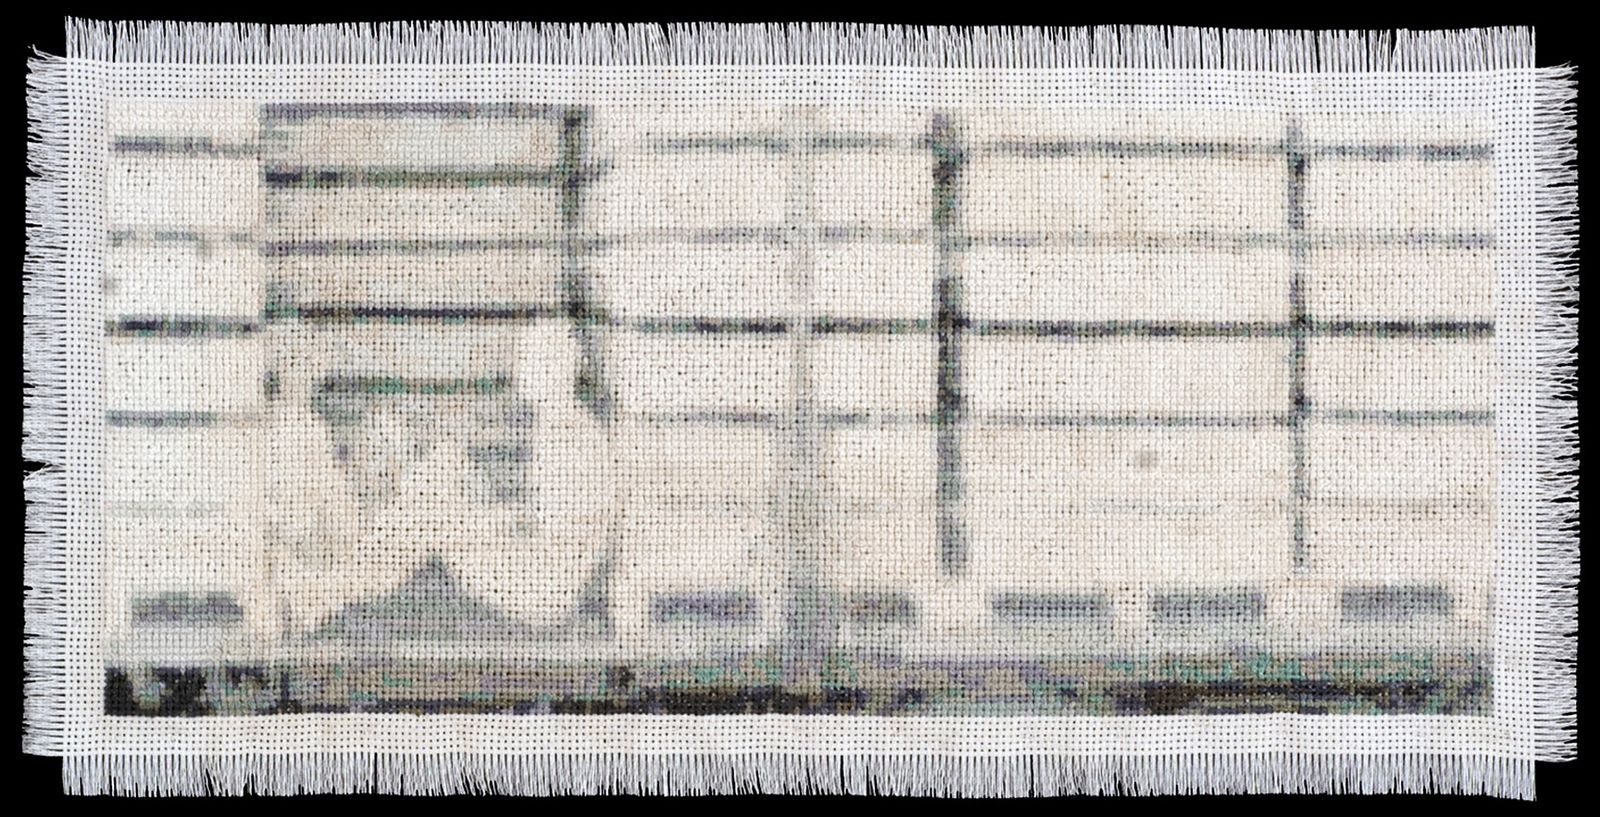 © Noelle Mason - Coyotaje (Rio Bravo), Hand Embroidered Cotton, 12" x 18"